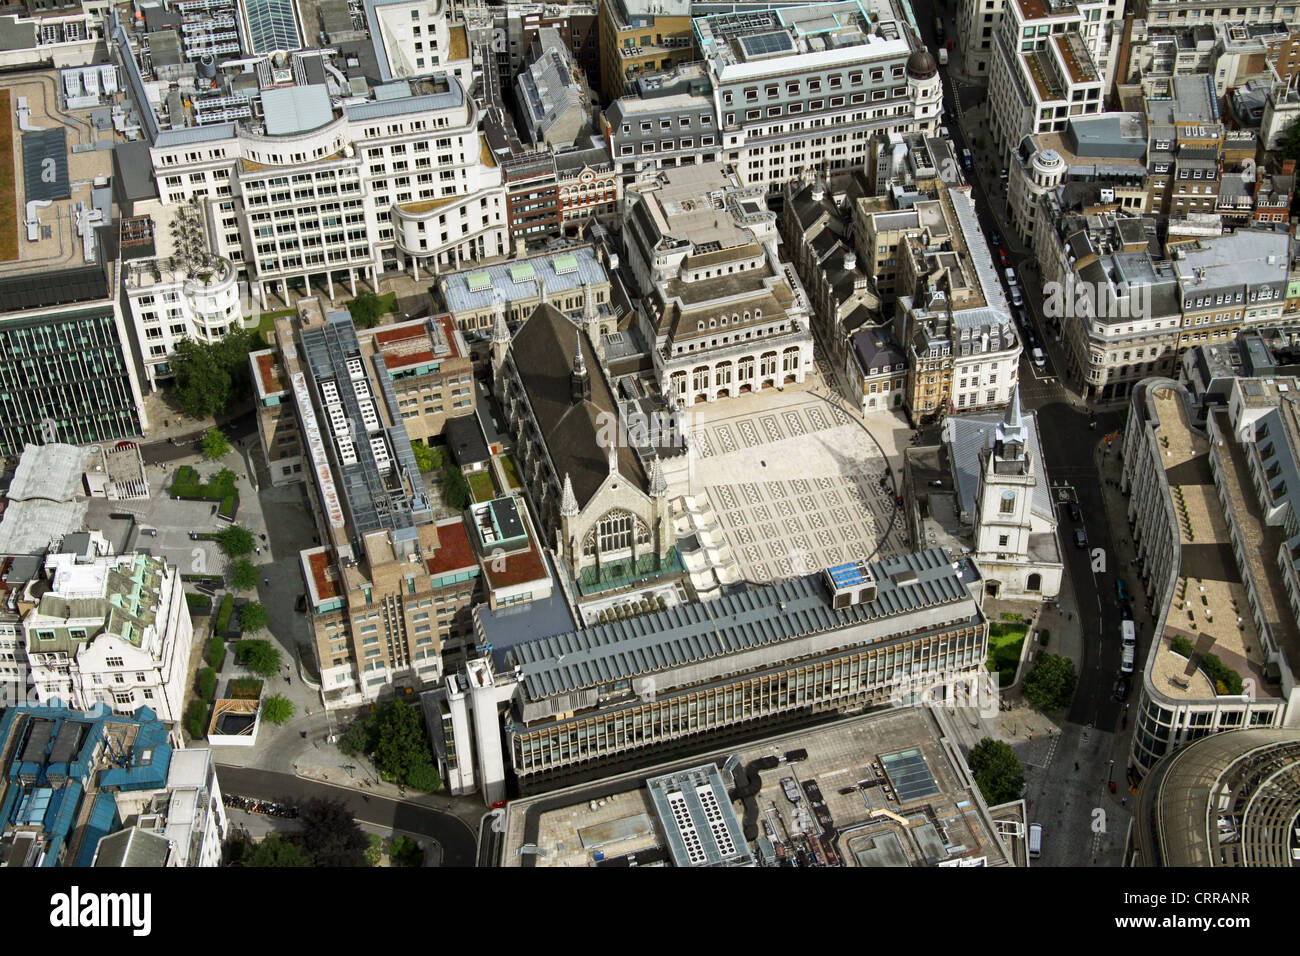 Vue aérienne de la Guildhall, London EC2 Banque D'Images